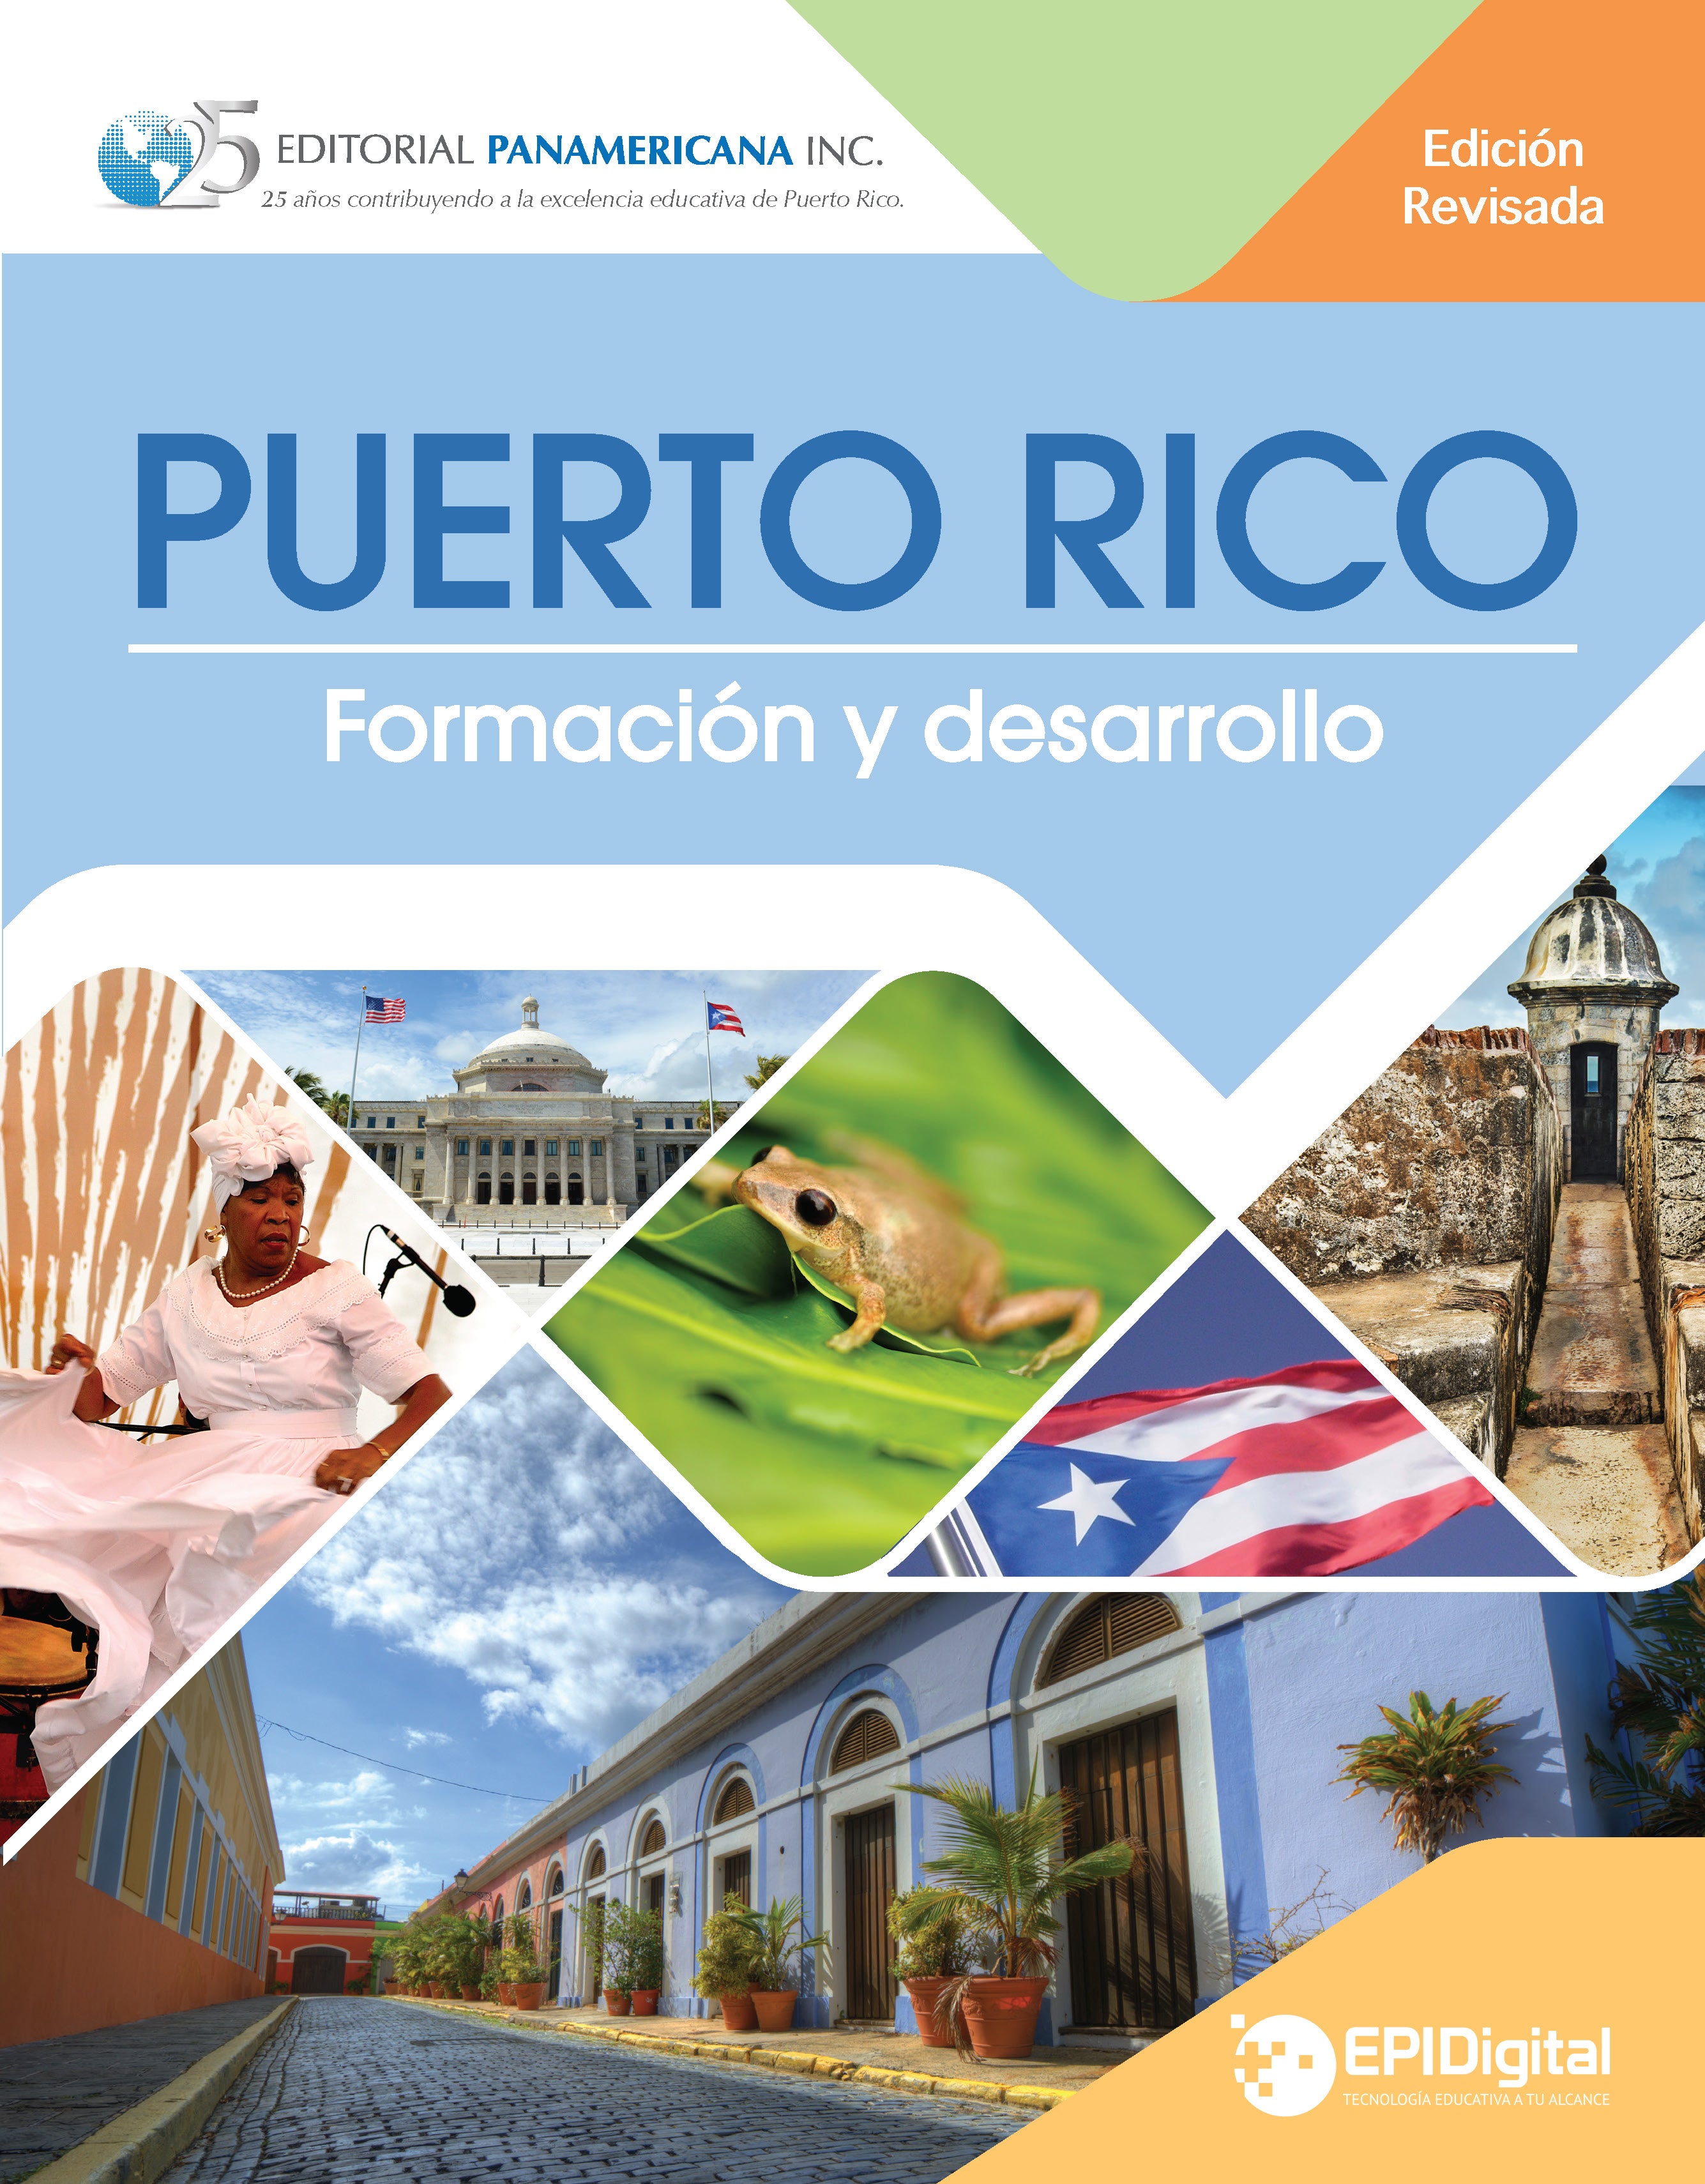 Puerto Rico: Formación y desarrollo